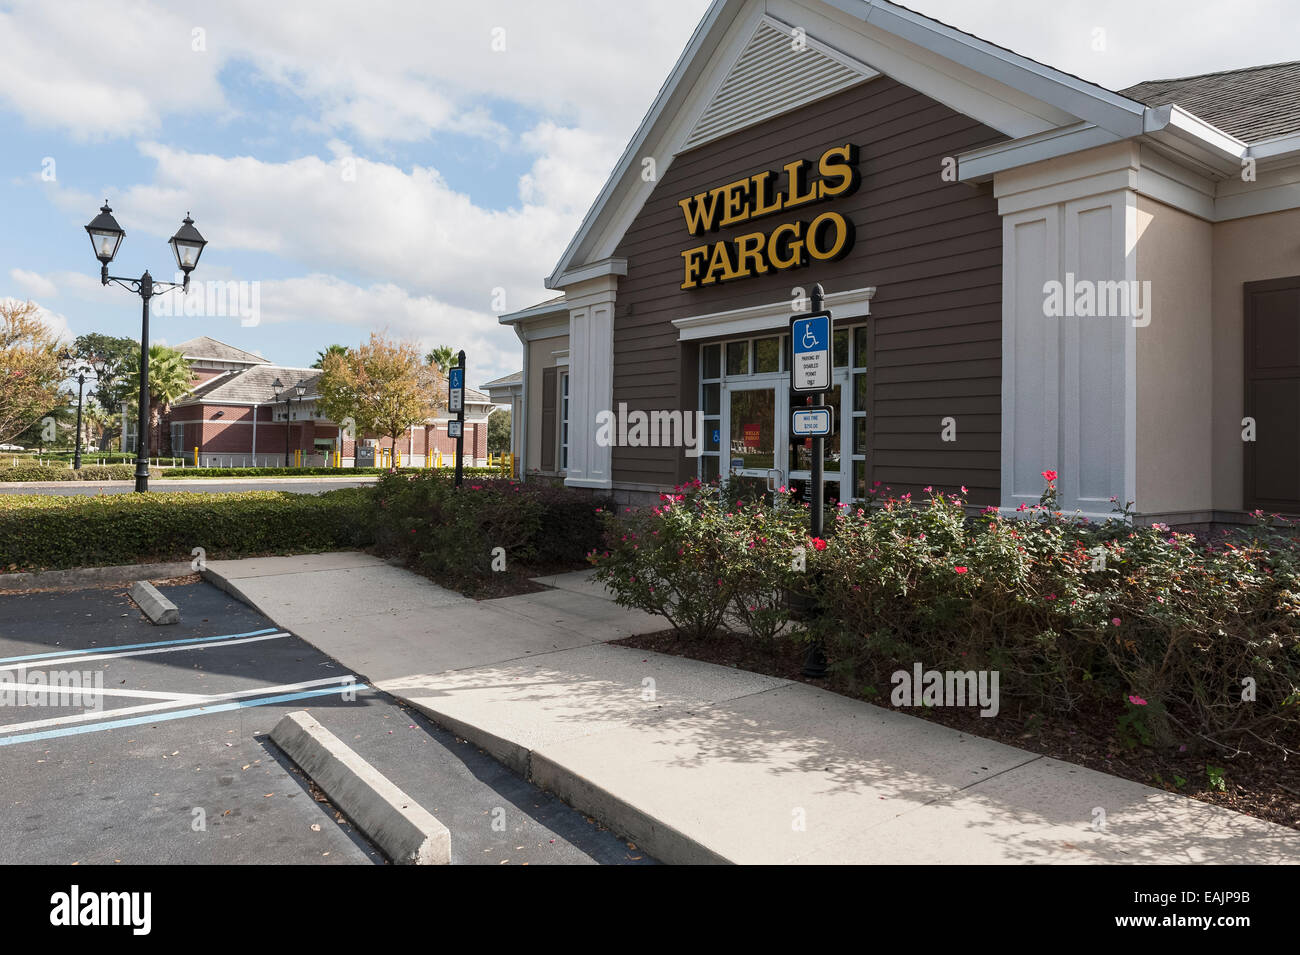 La Wells Fargo Bank Bâtiment à l'intérieur du Village, Florida USA Banque D'Images